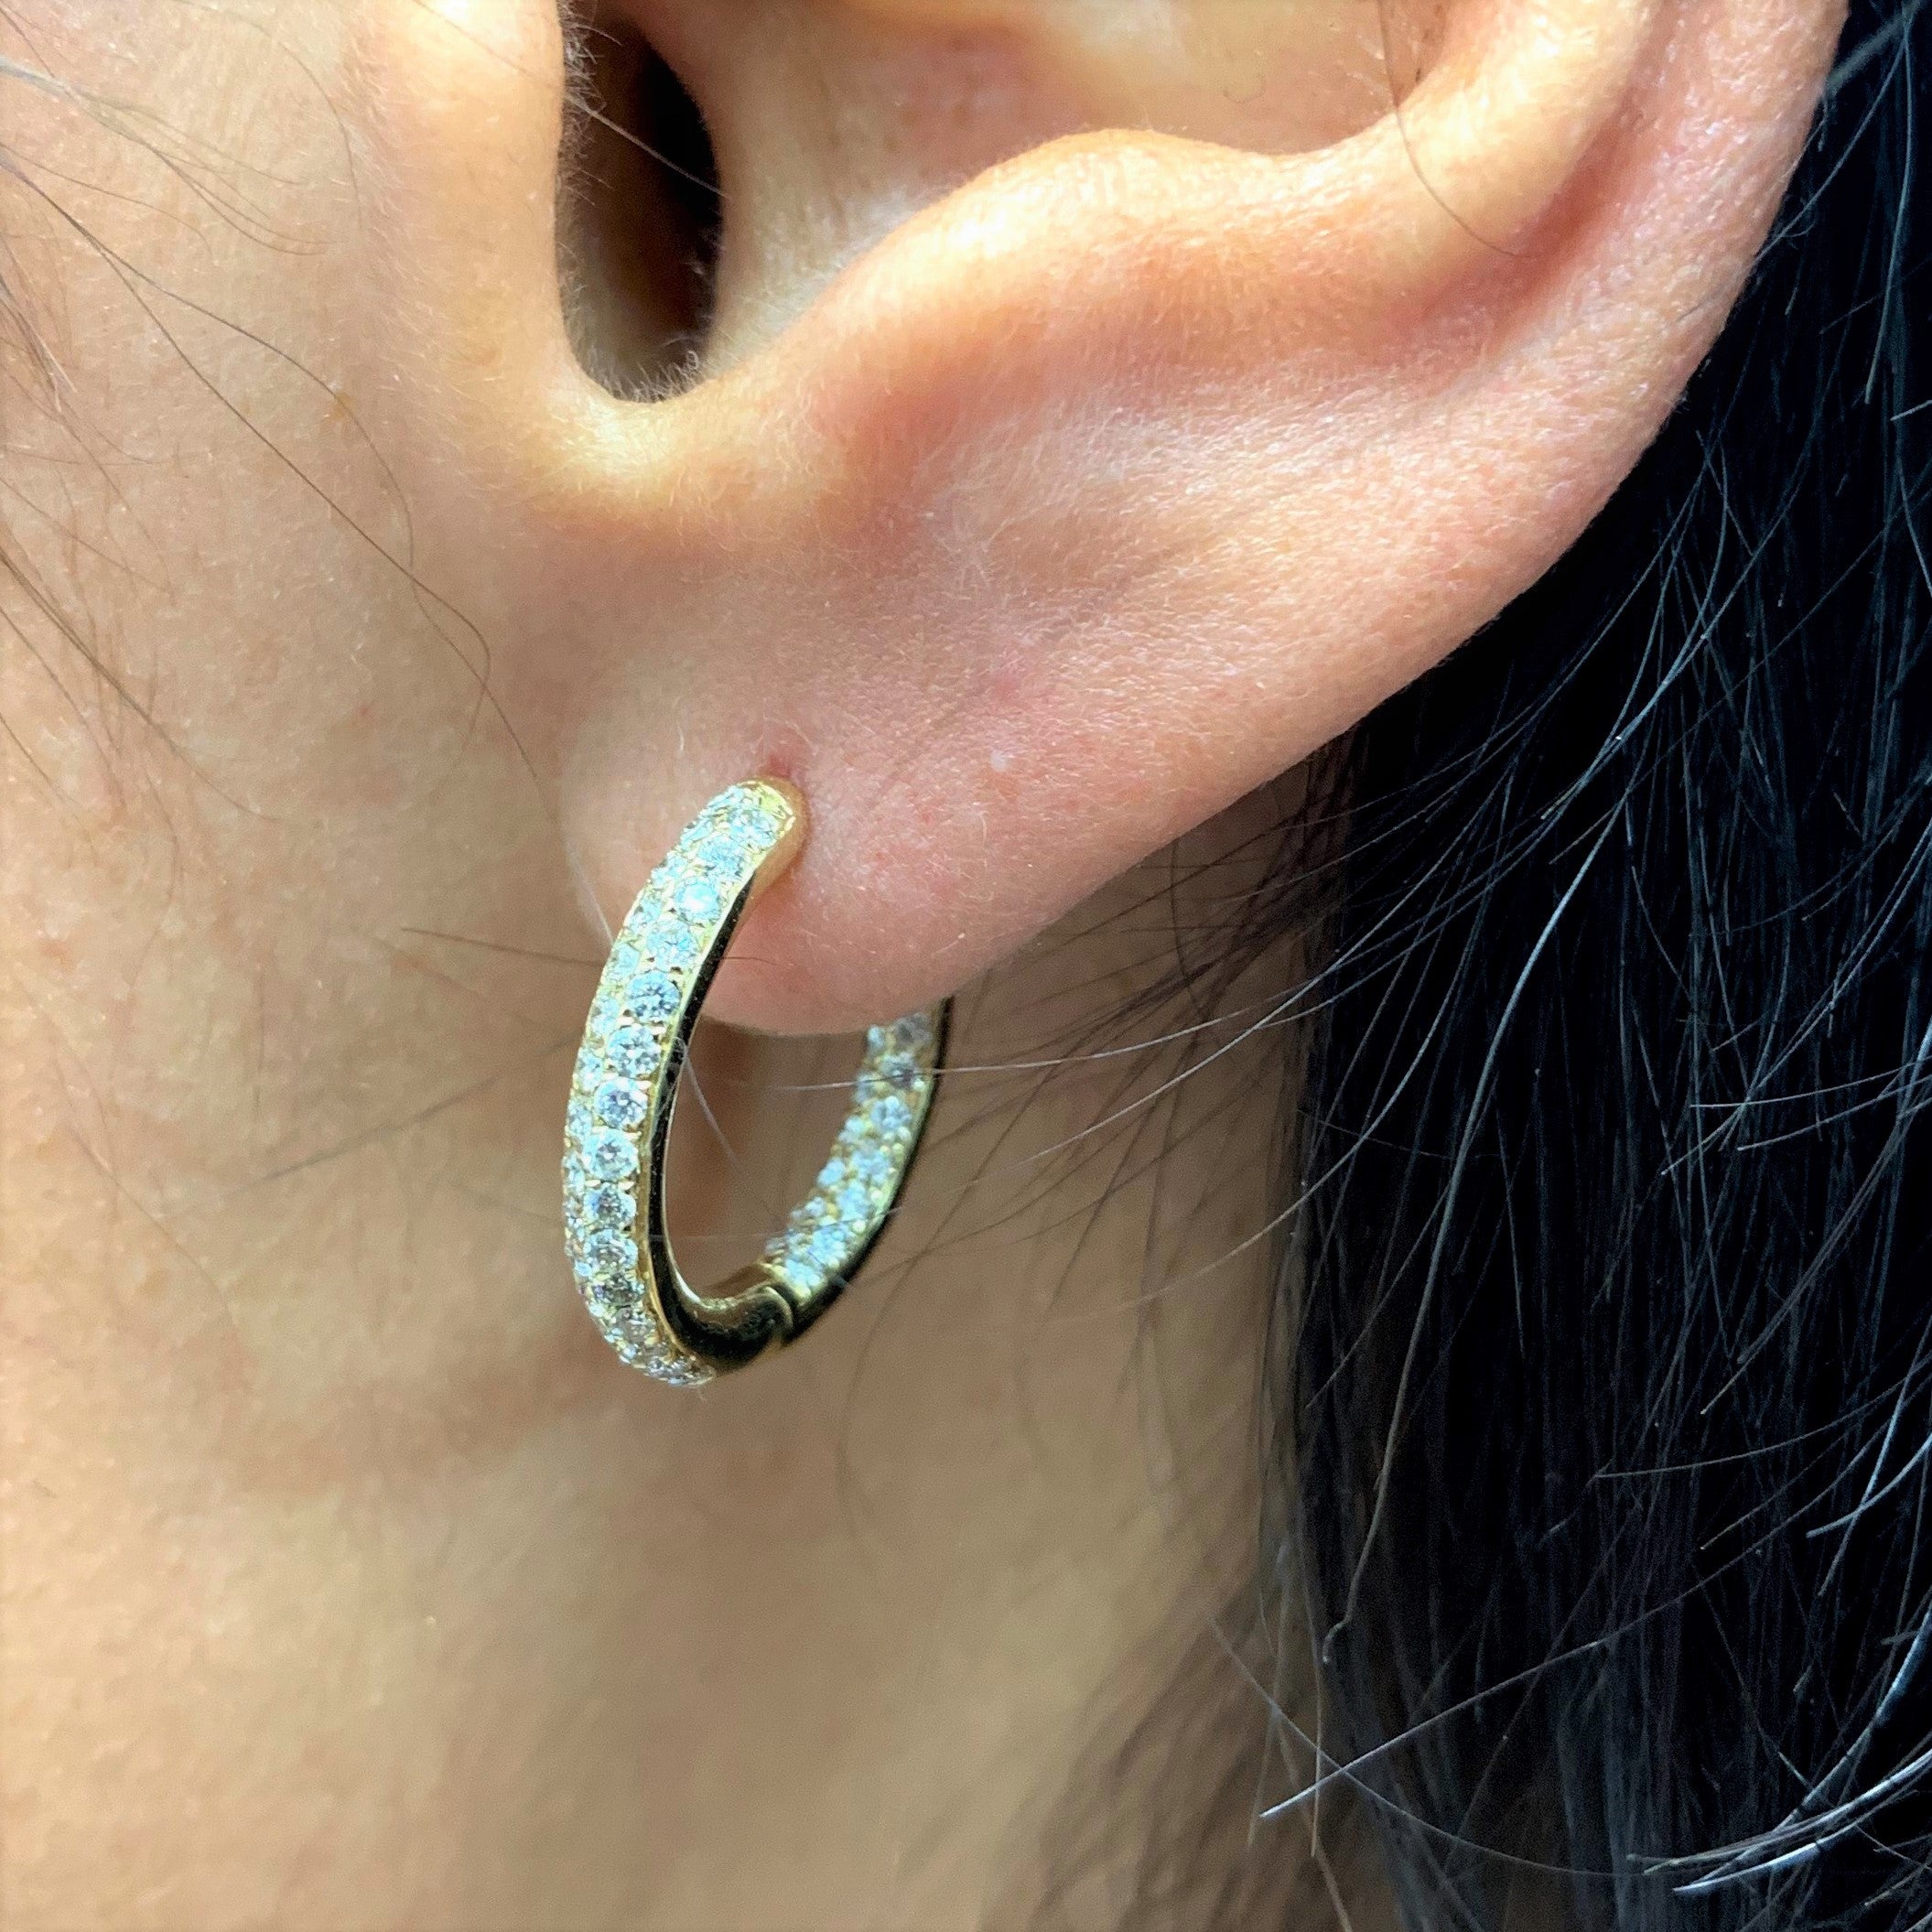 14k Gold & Diamond Pave Hoop Earrings - 1.00ct